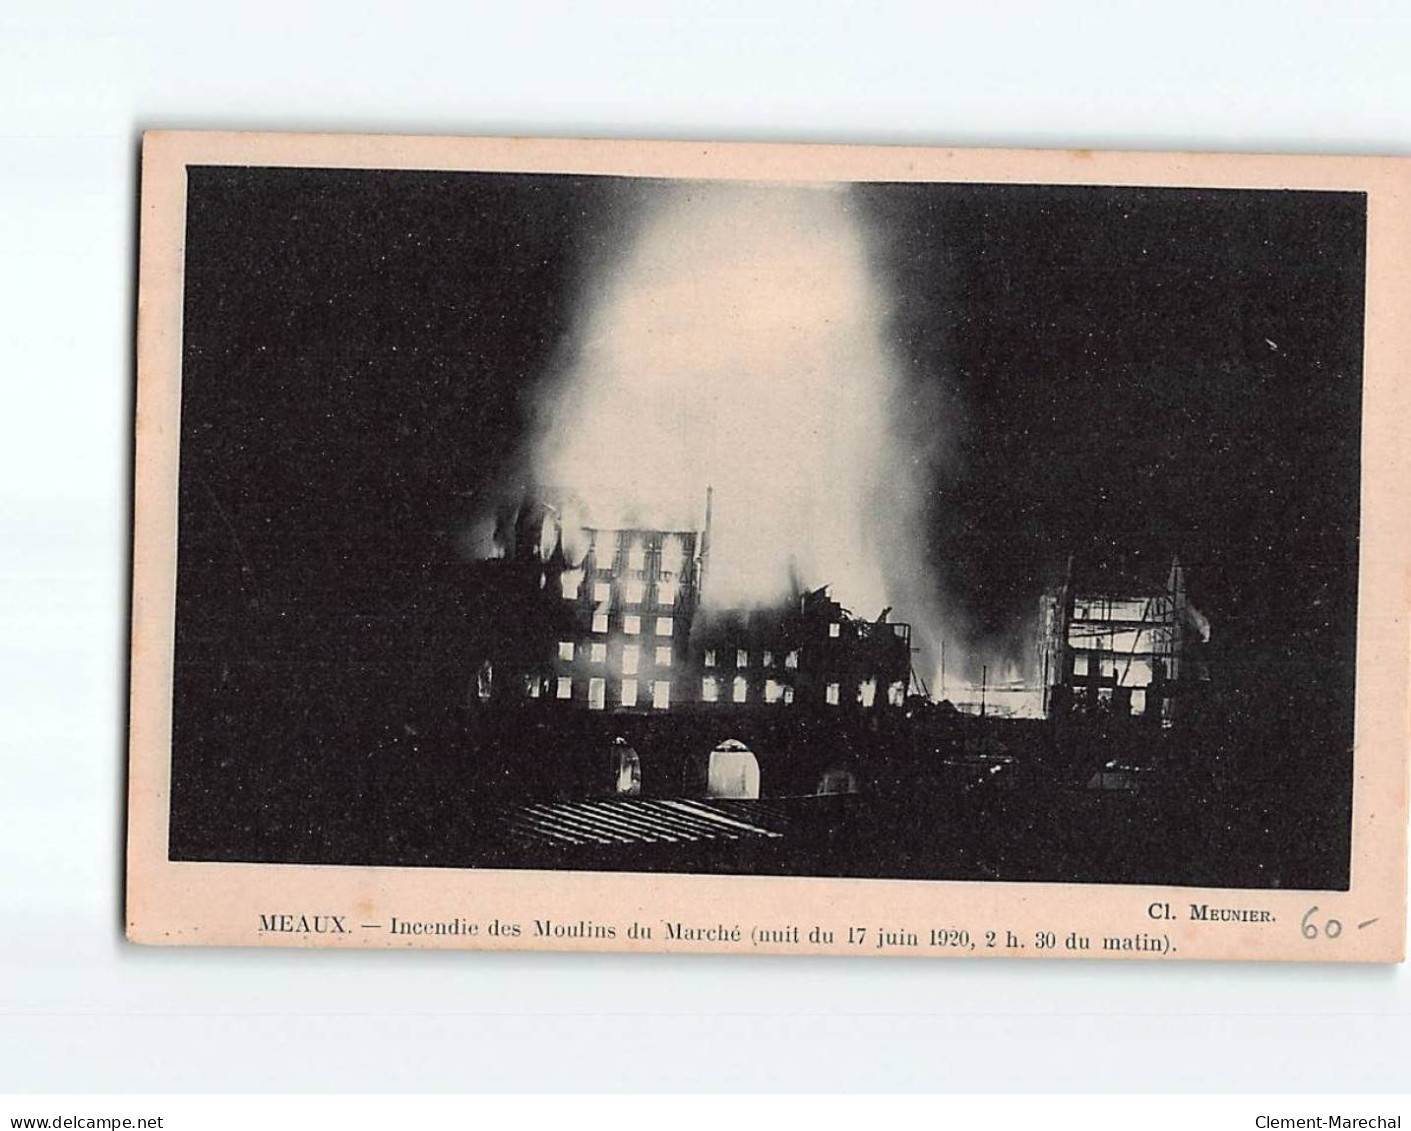 MEAUX : Incendie Des Moulins Du Marché, Nuit Du 17 Juin 1920 - Très Bon état - Meaux